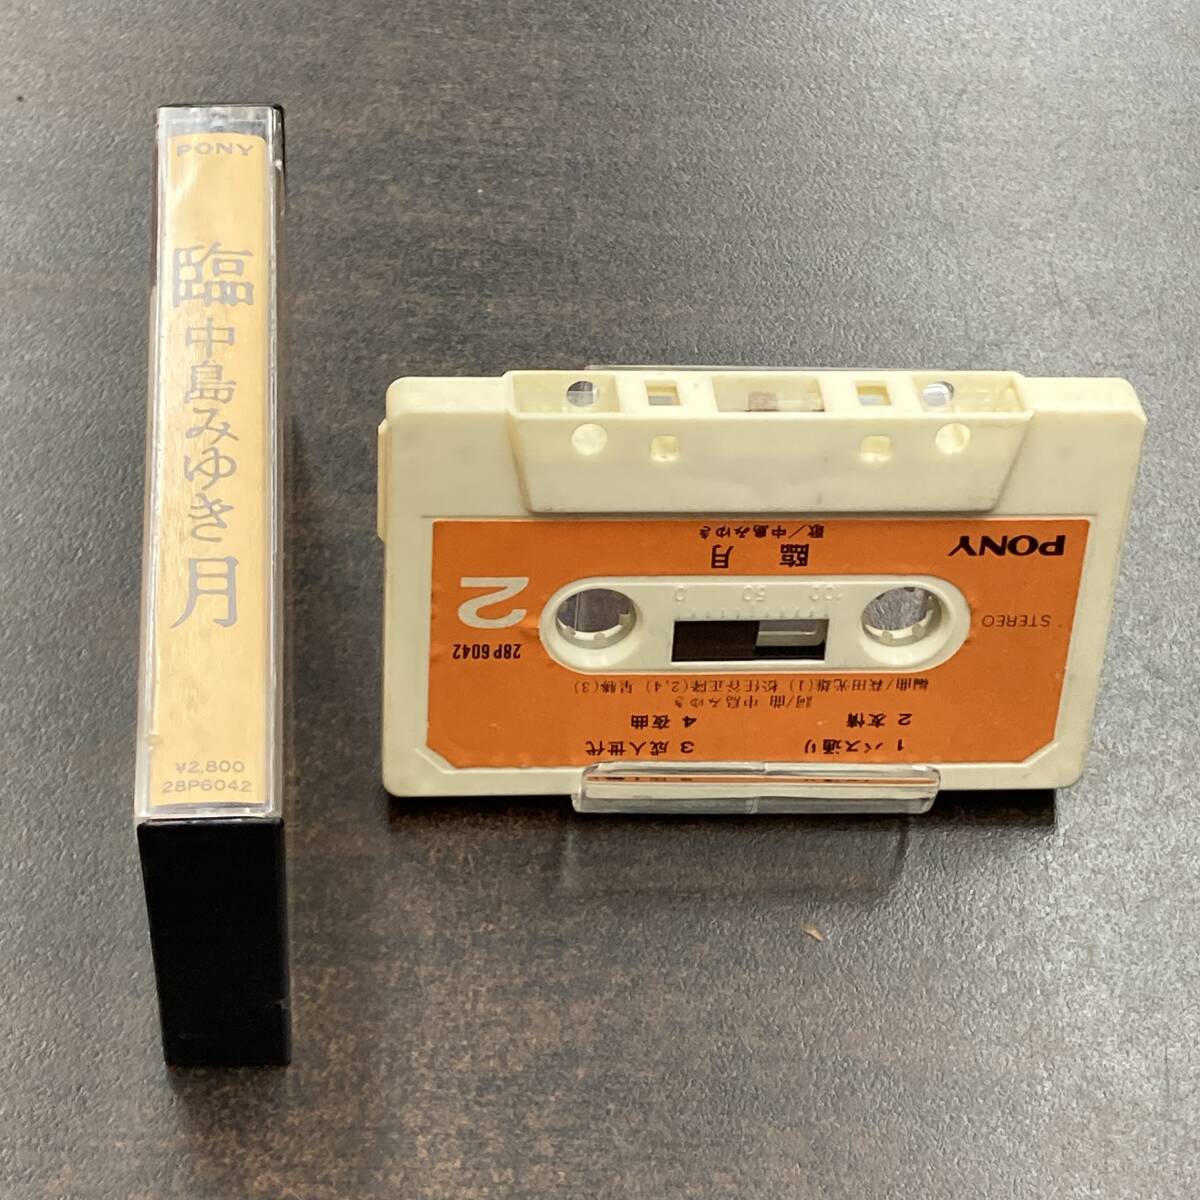 1026M 中島みゆき 臨月 カセットテープ / Miyuki Nakajima Citypop Cassette Tape_画像3